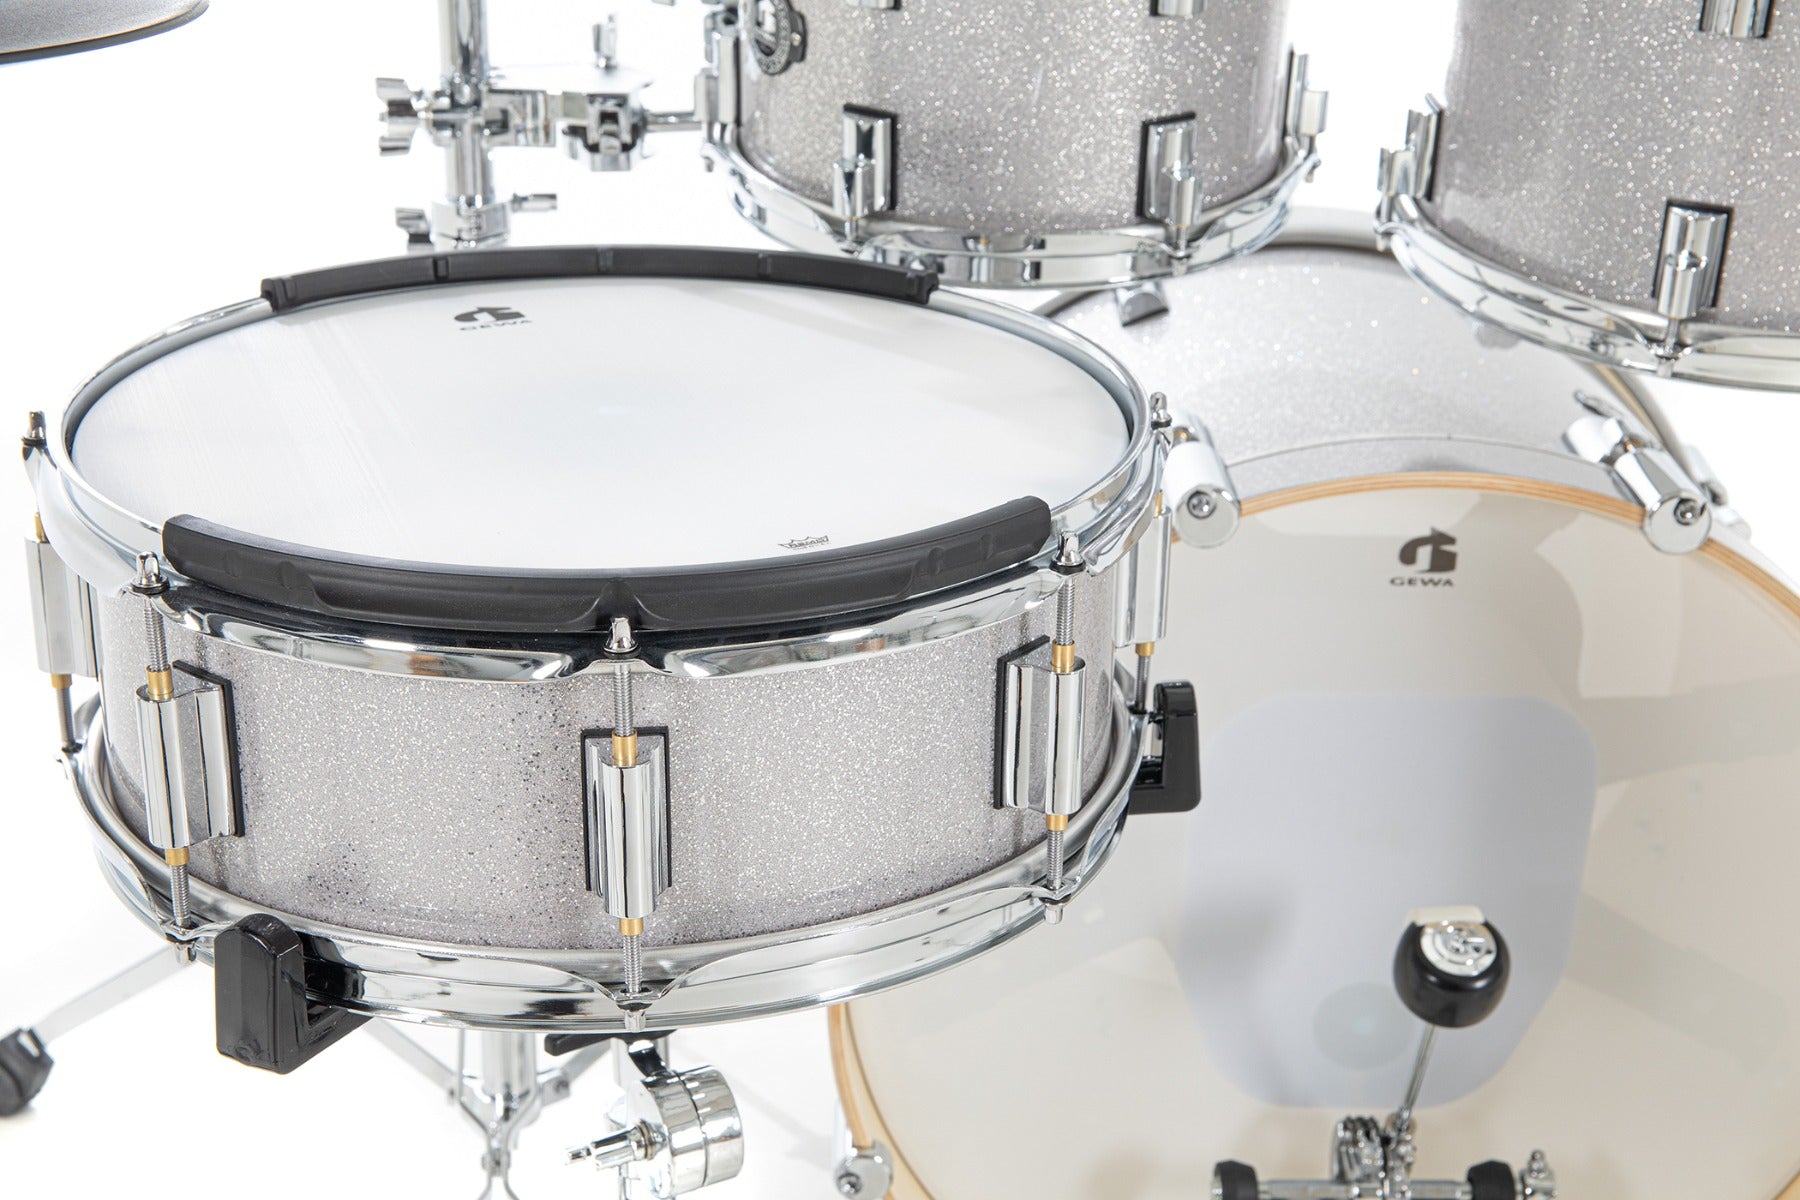 GEWA G9 Pro 5 SE Electronic Drum Set - Silver Sparkle, View 9